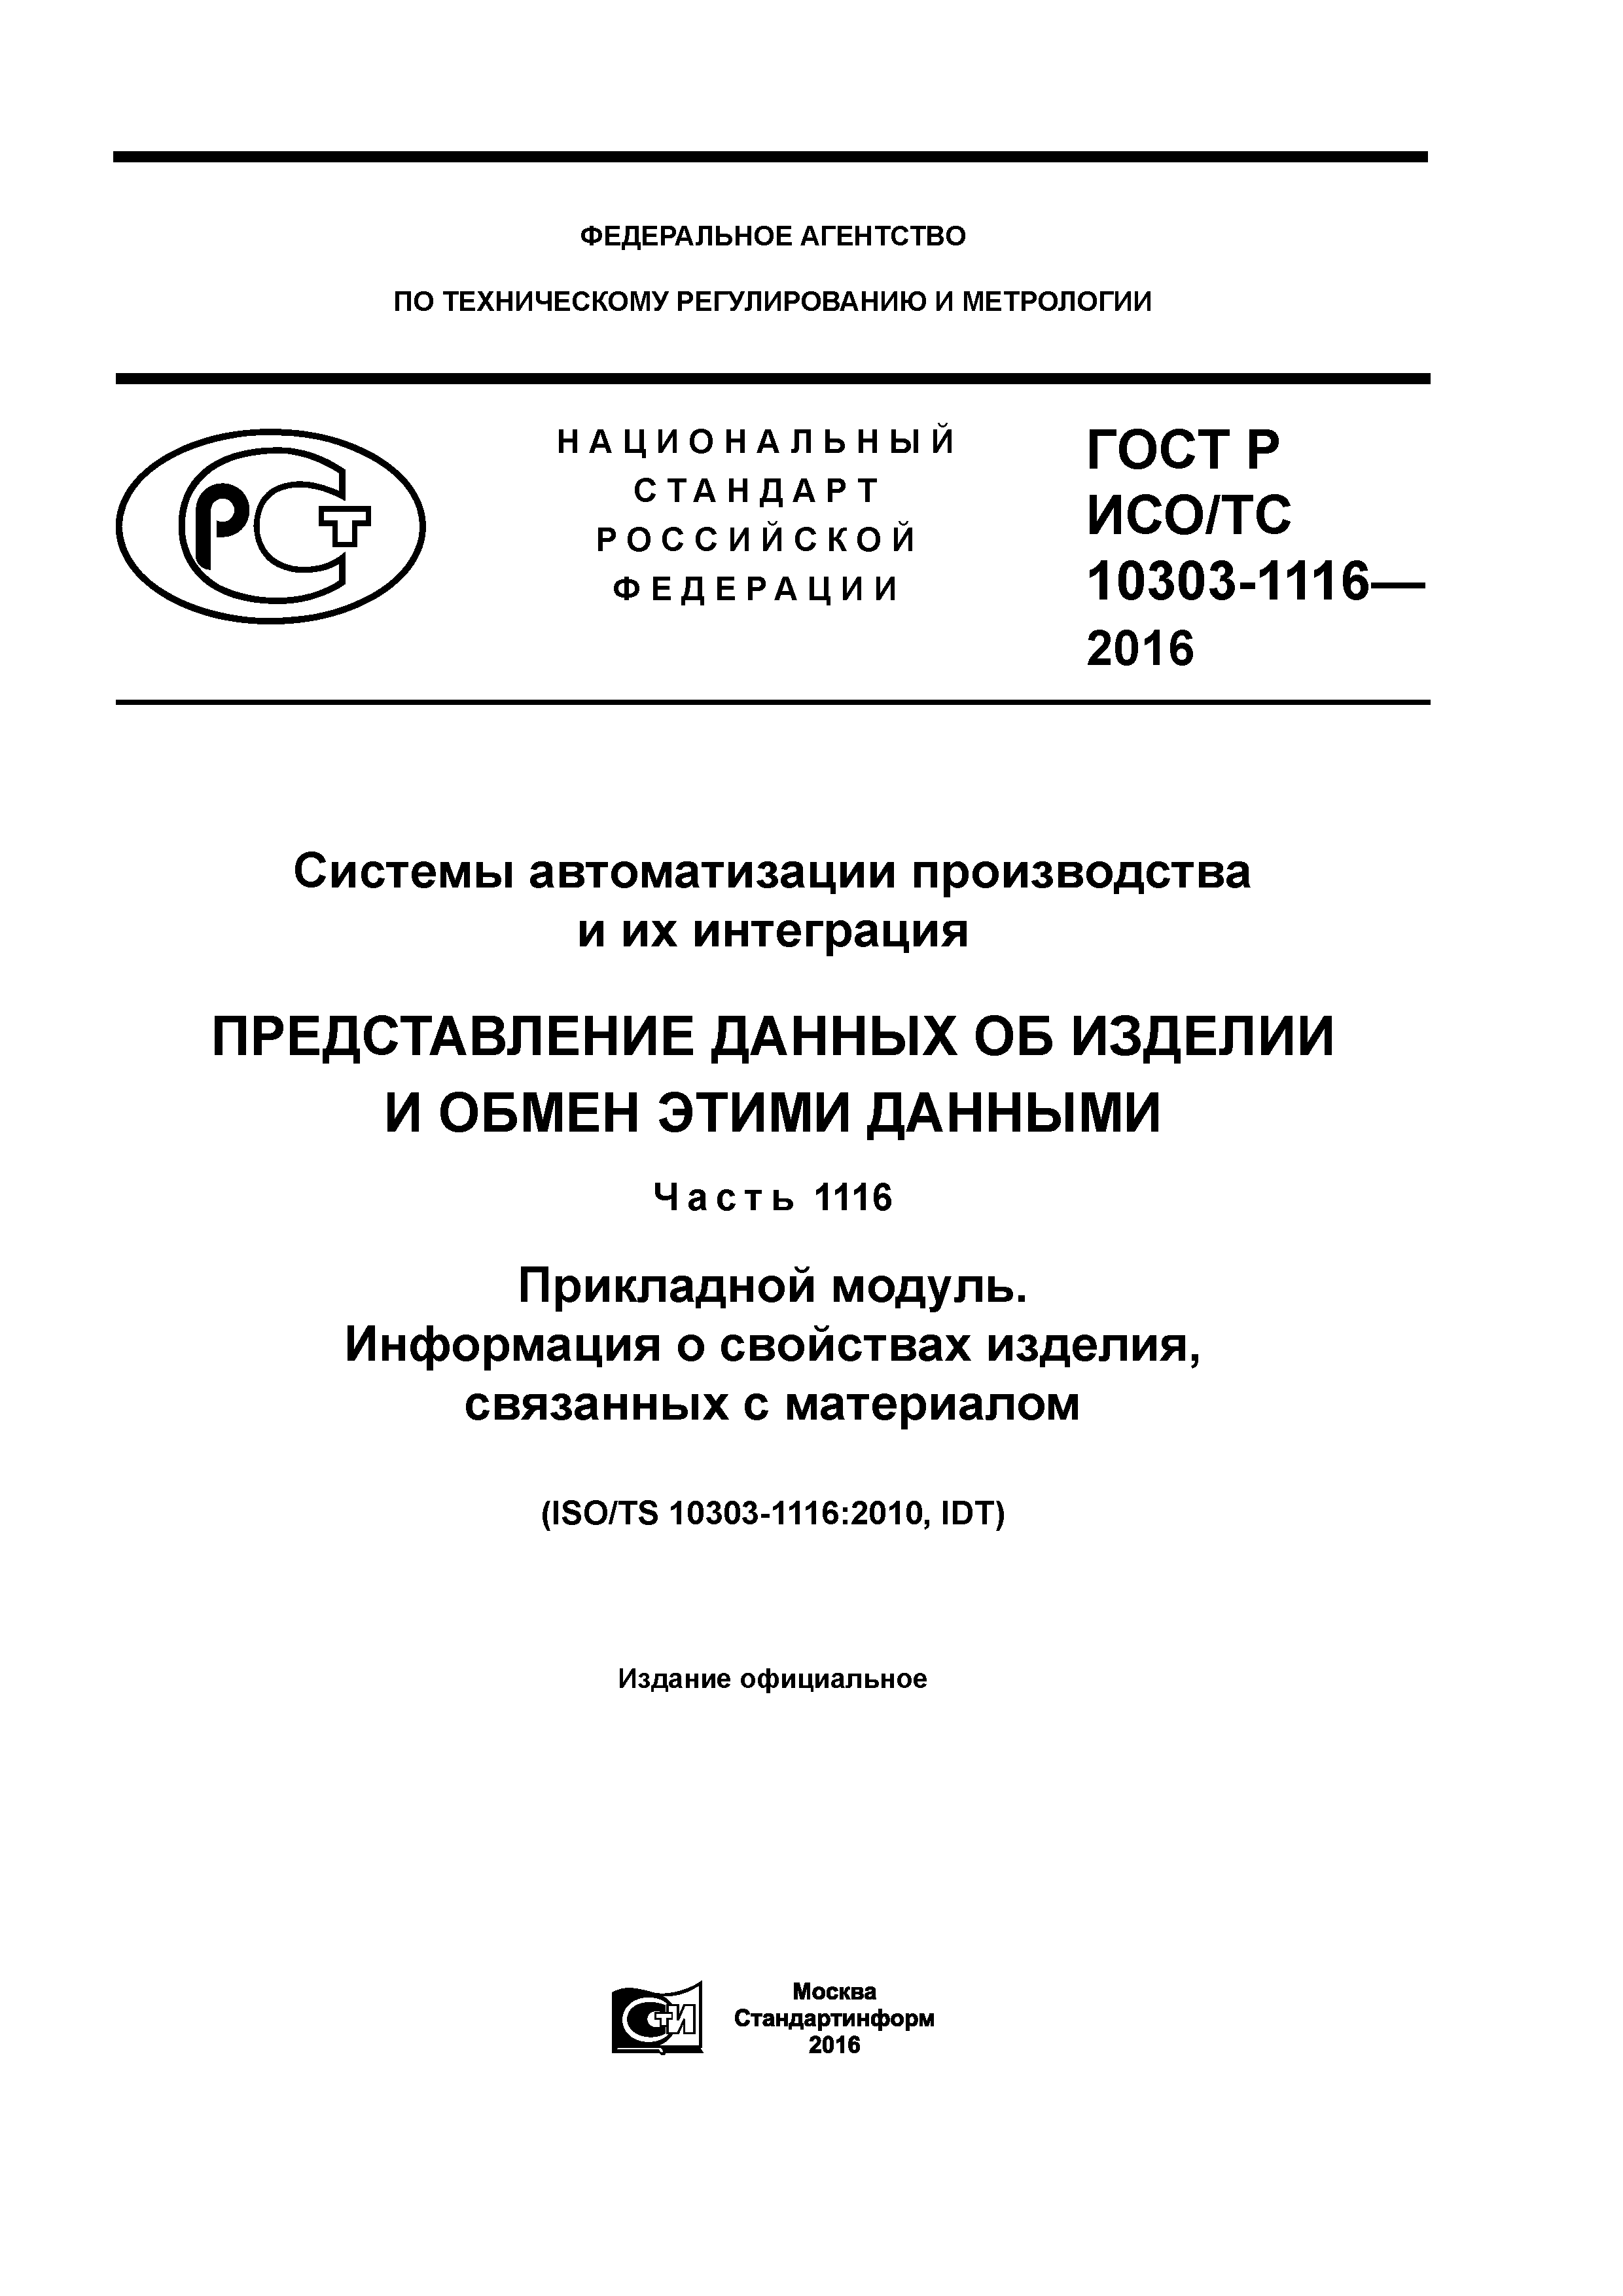 ГОСТ Р ИСО/ТС 10303-1116-2016